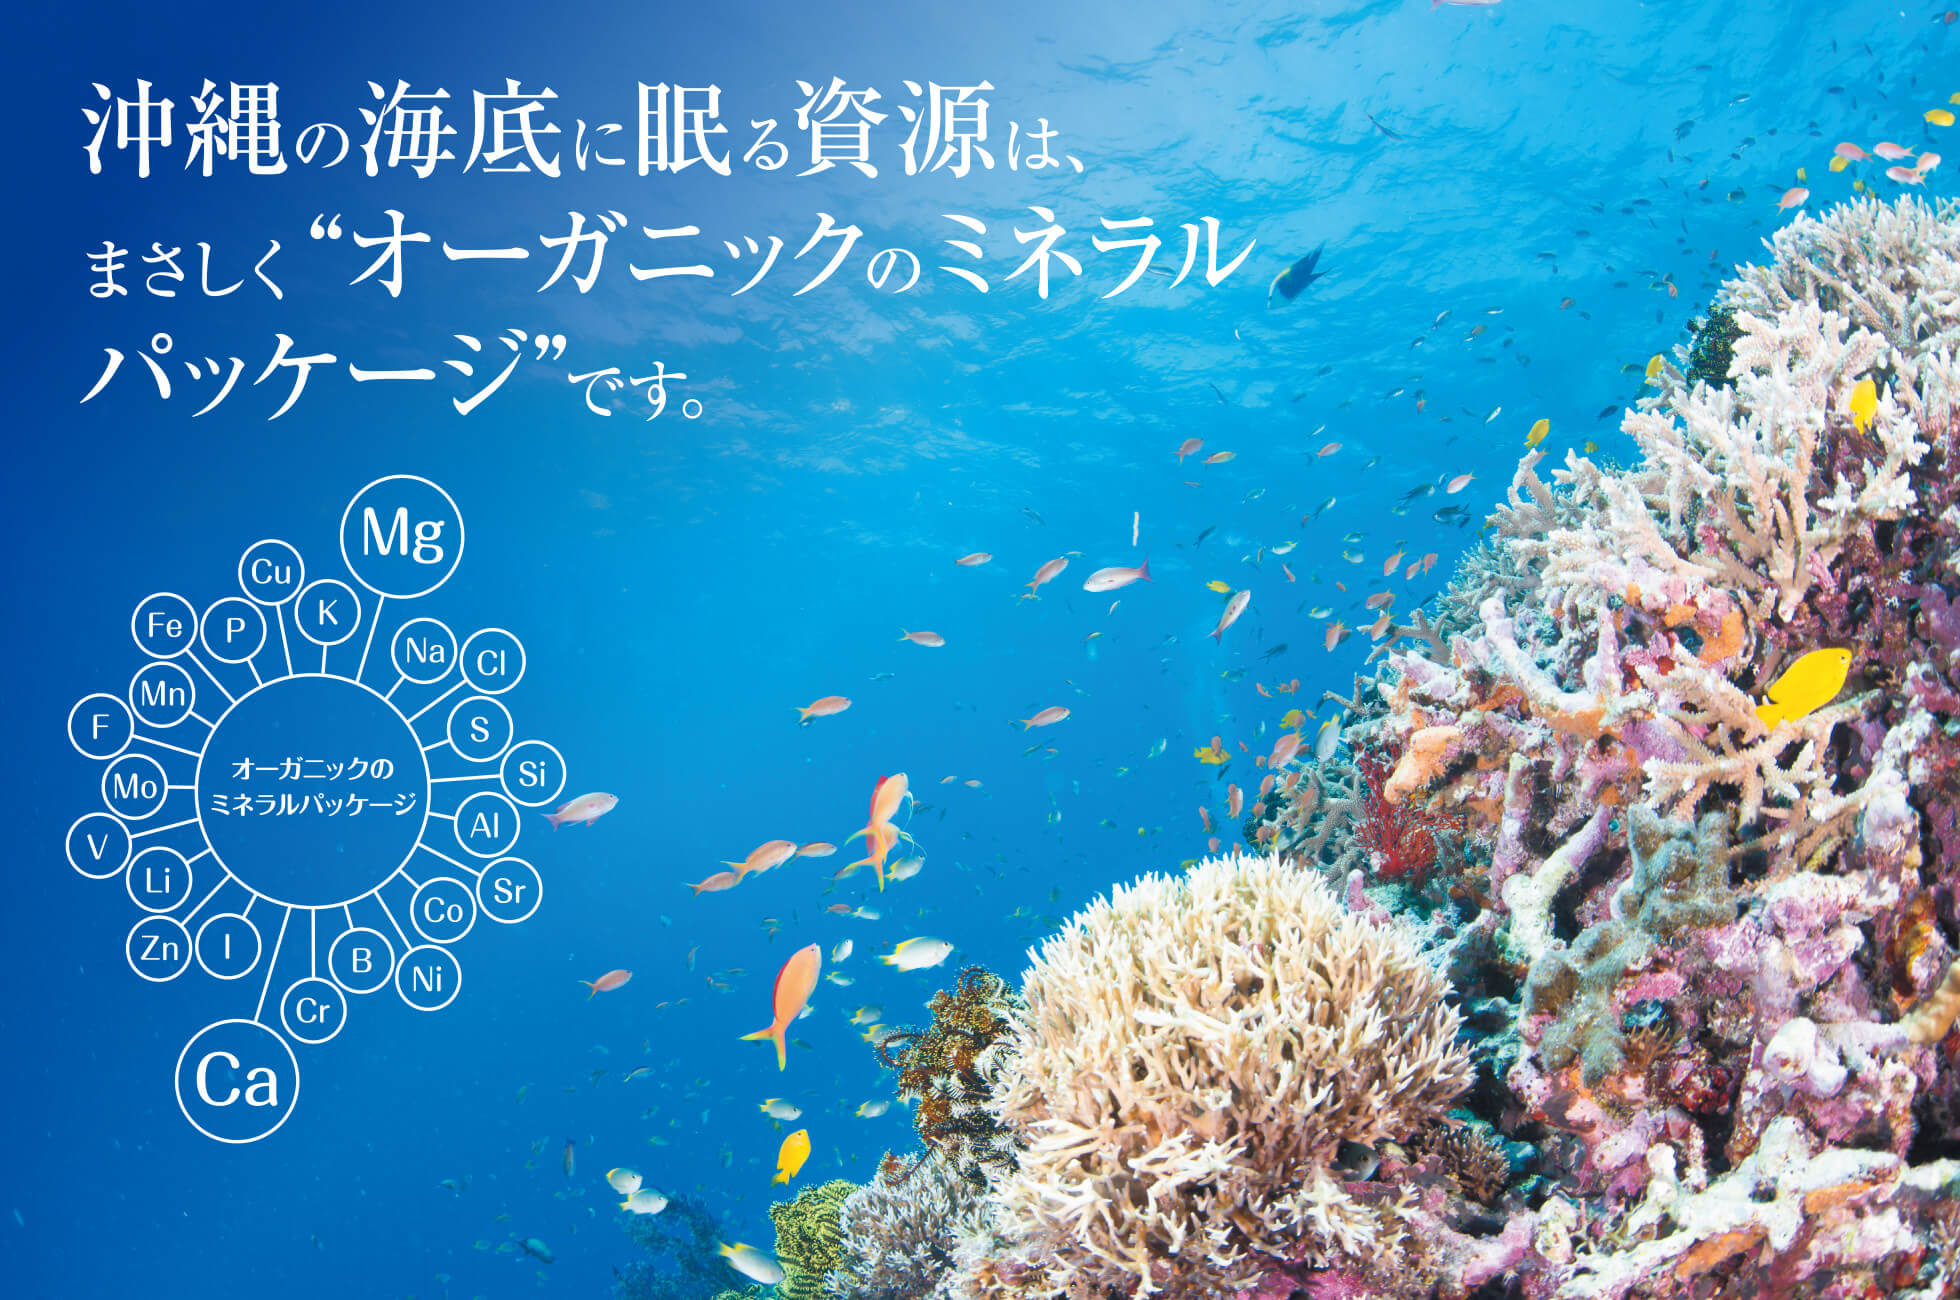 沖縄の海底に眠る資源は、まさしく“オーガニックのミネラルパッケージ”です。